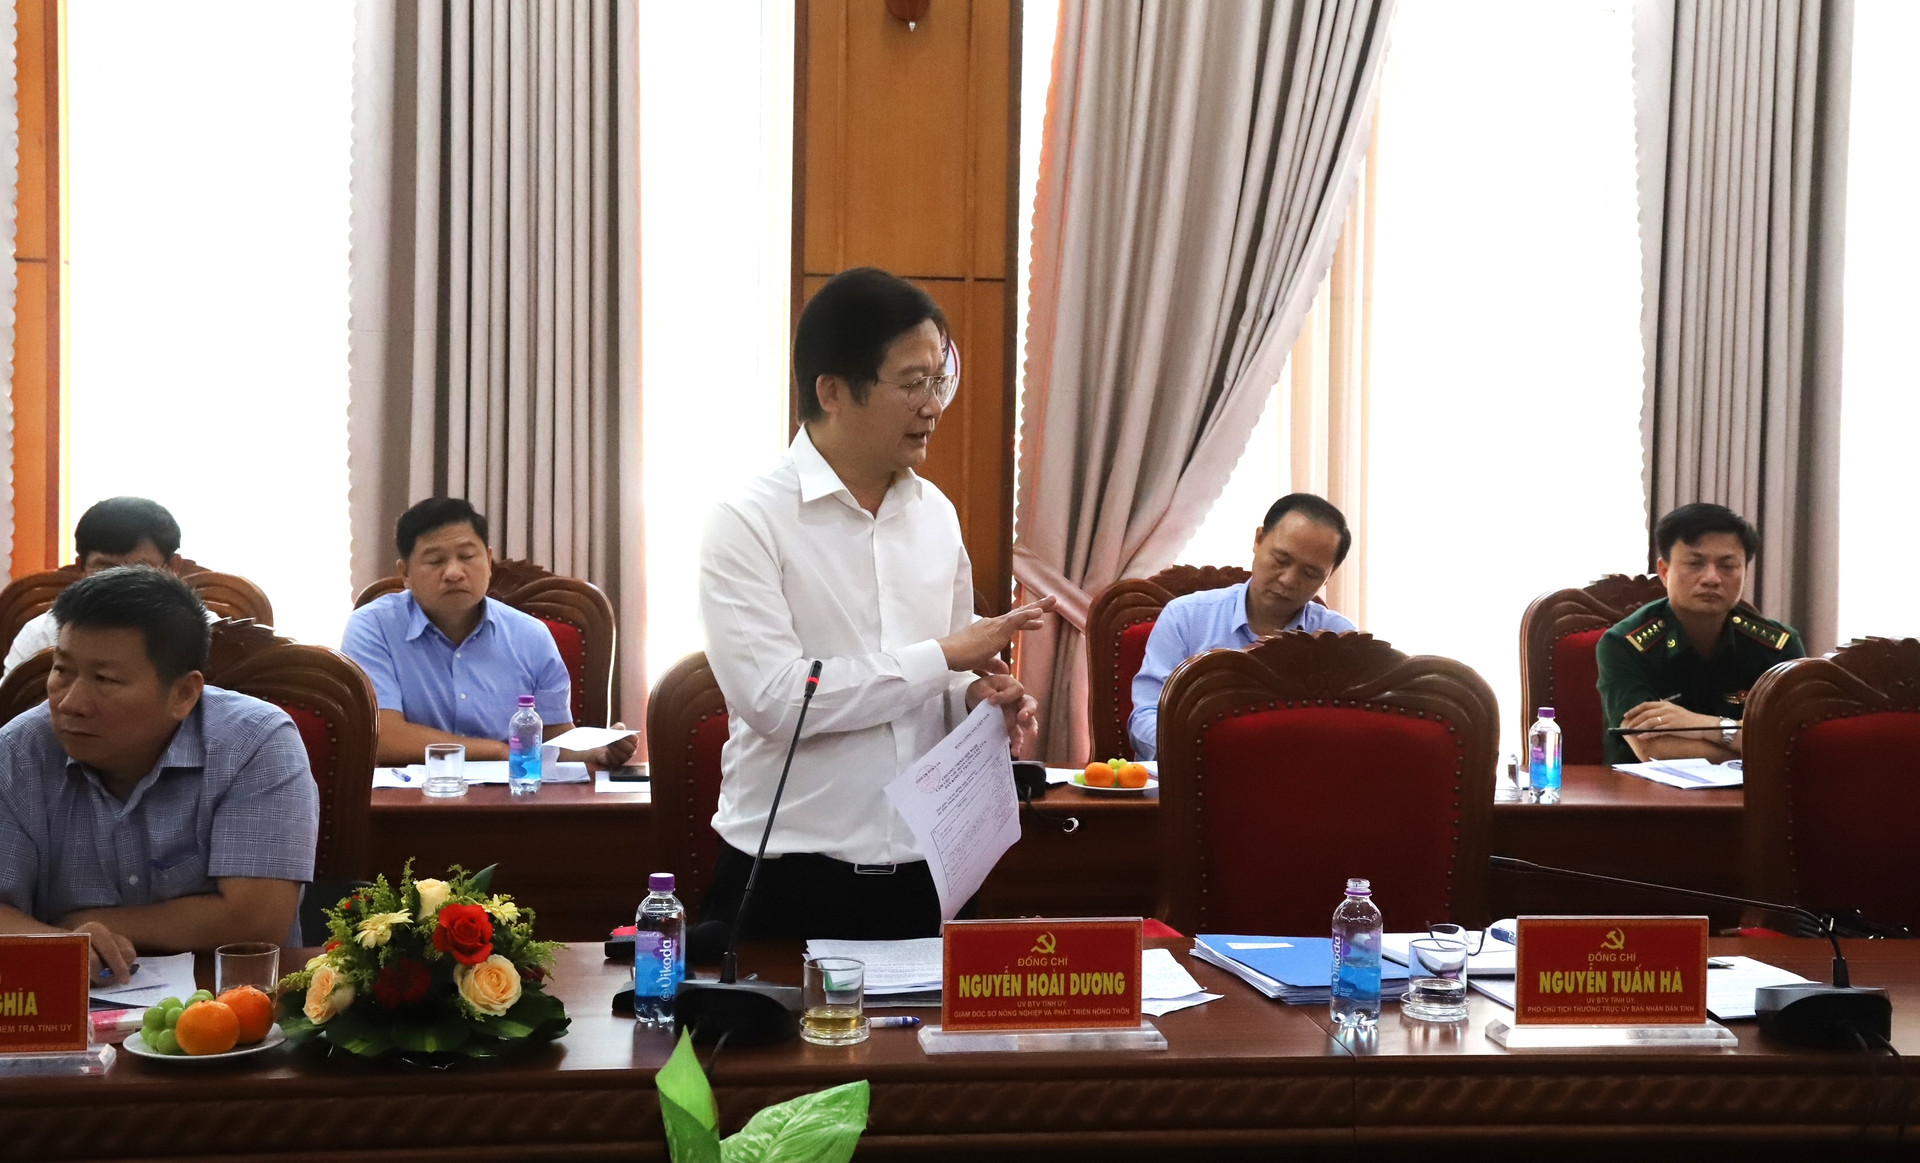 Giám đốc Sở Nông nghiệp và Phát triển nông thôn tỉnh Đắk Lắk đóng góp ý kiến về công tác quản lý, bảo vệ và phát triển rừng tại buổi làm việc.